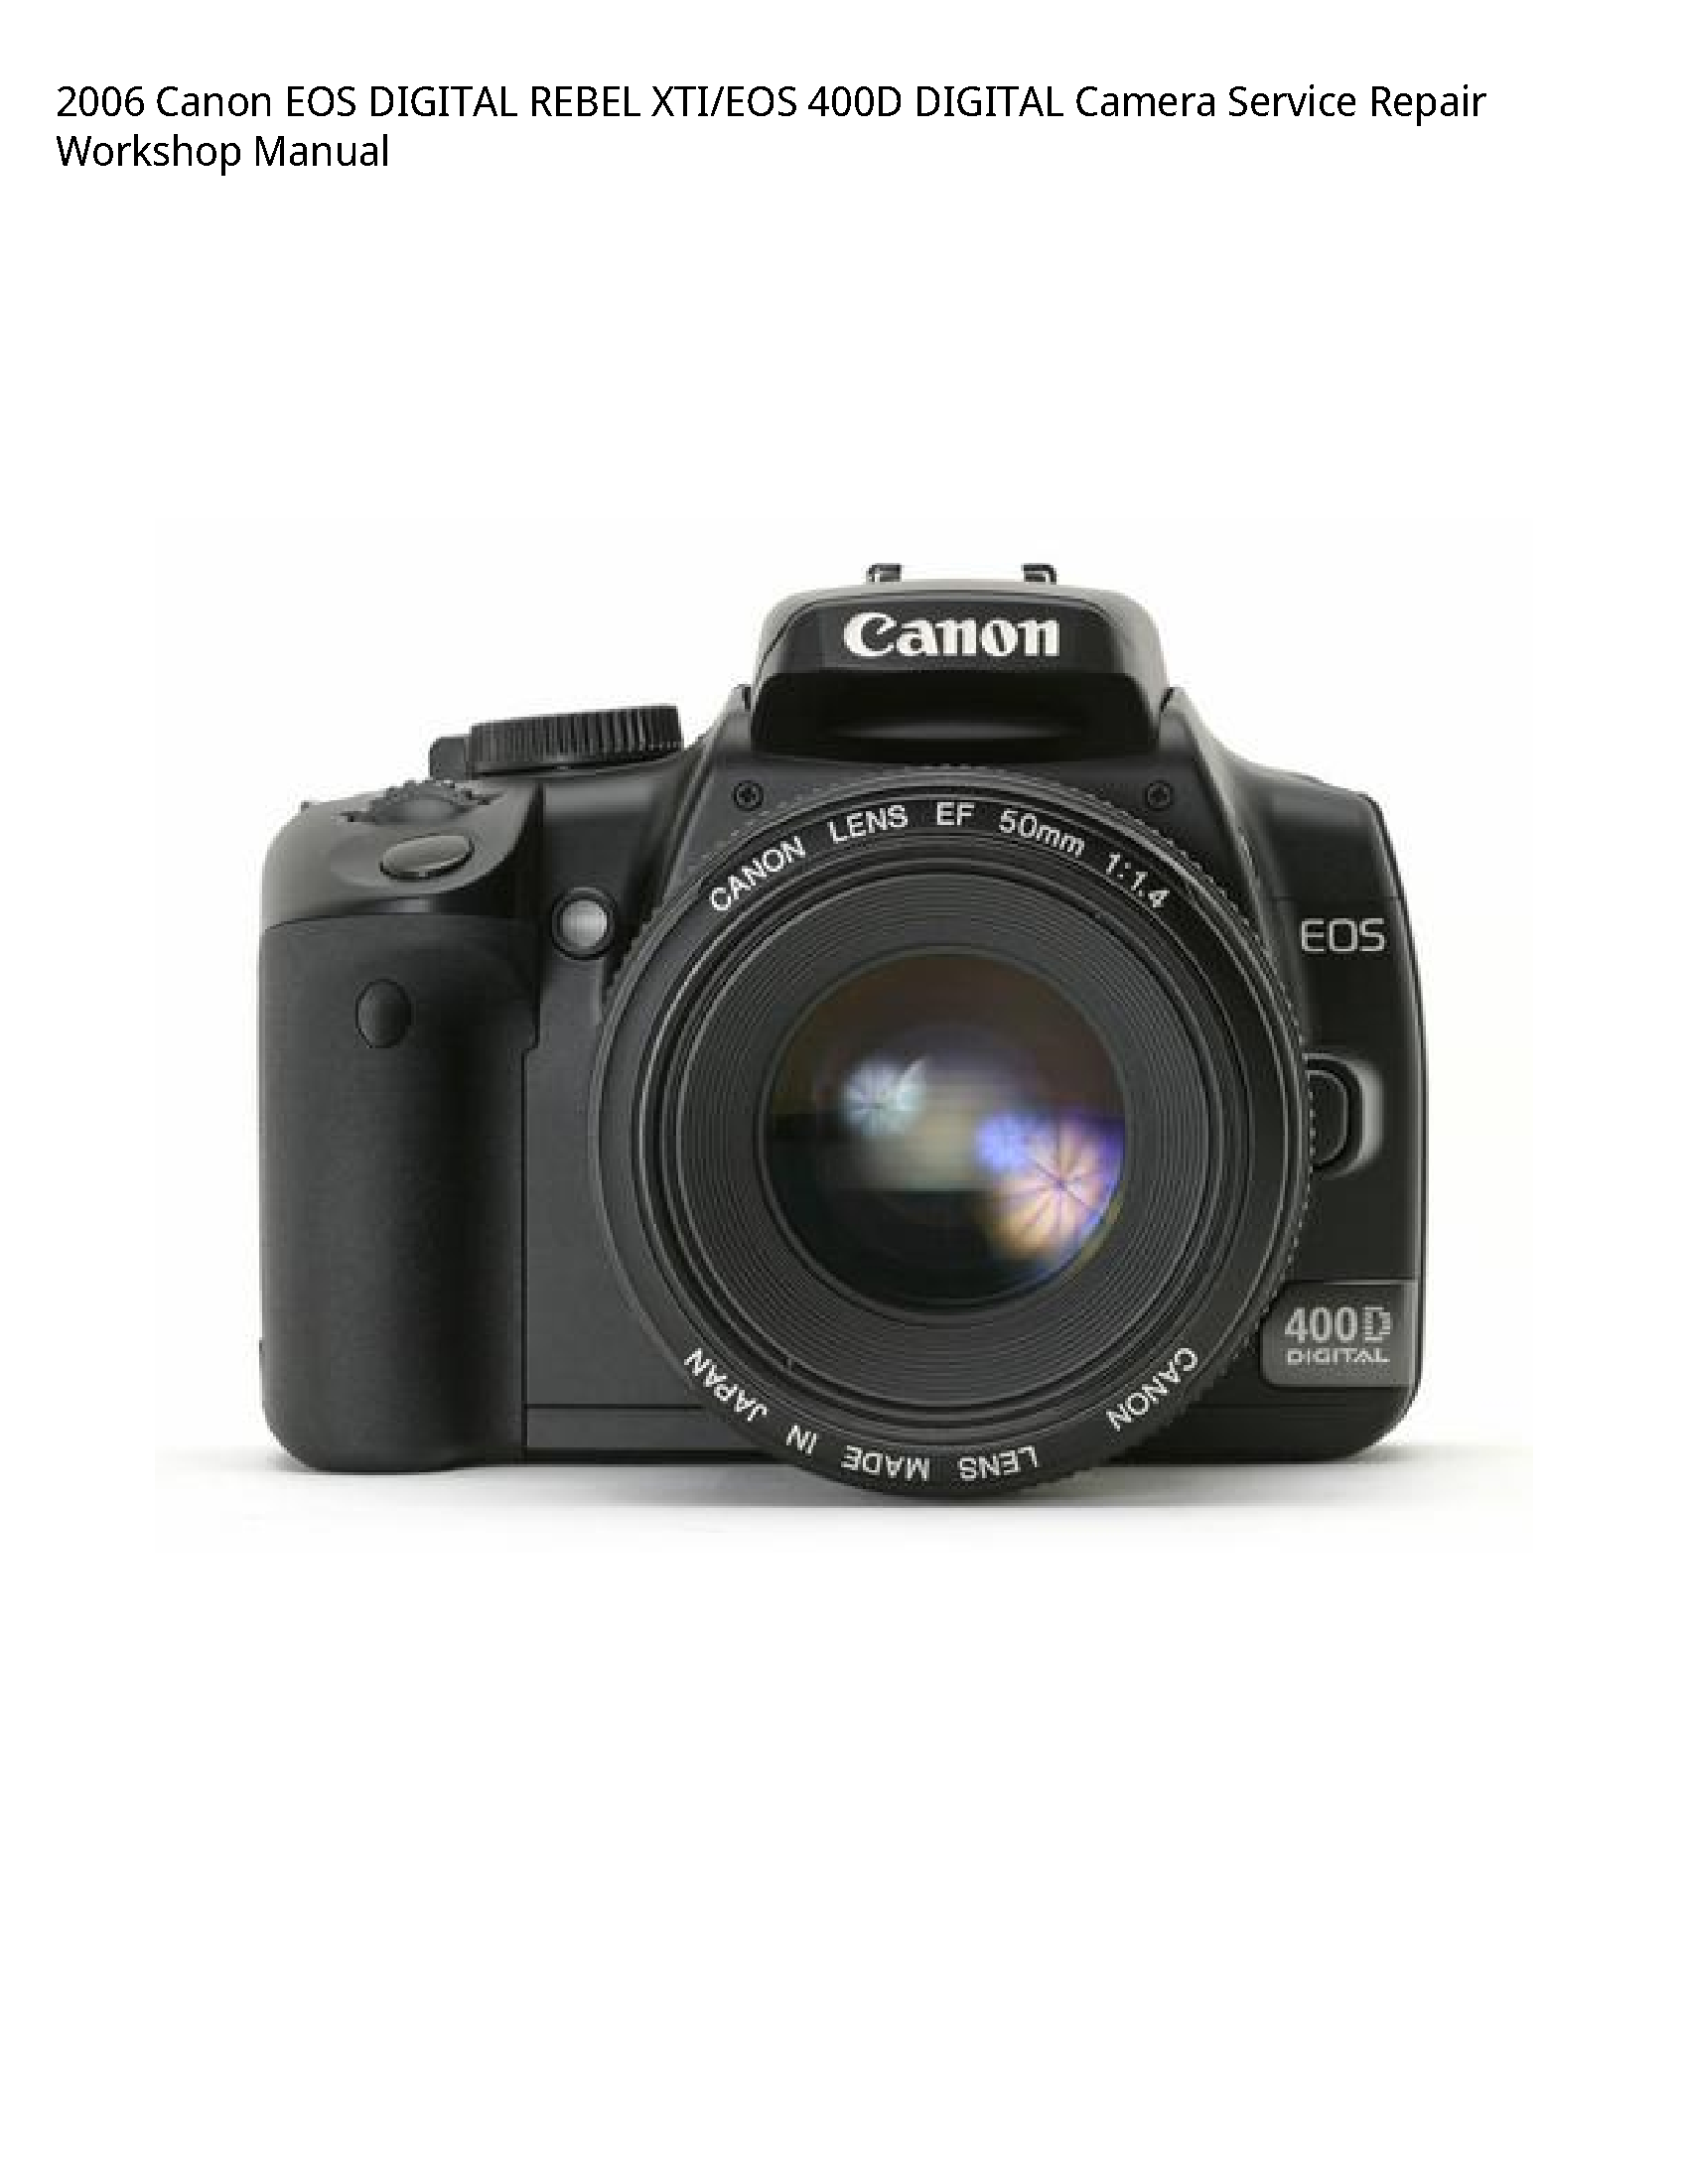 Canon 400D EOS DIGITAL REBEL XTI/EOS DIGITAL Camera manual